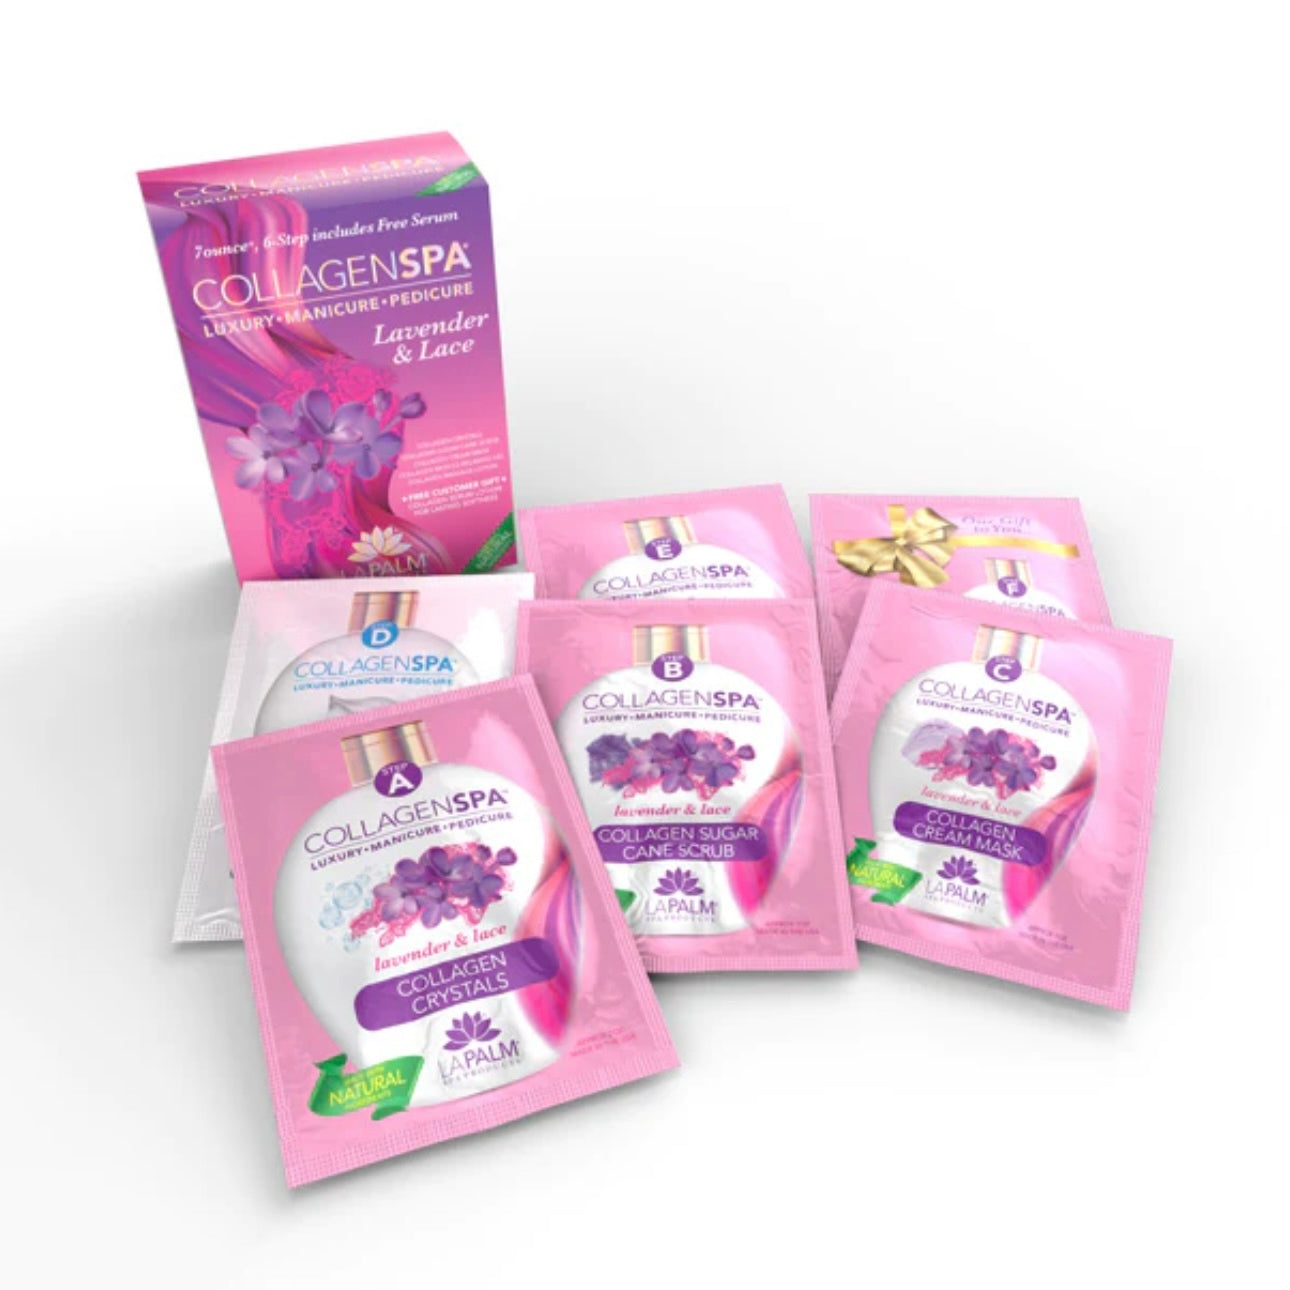 LaPalm Collagen Spa 6 Step Kit - Lavender & Lace